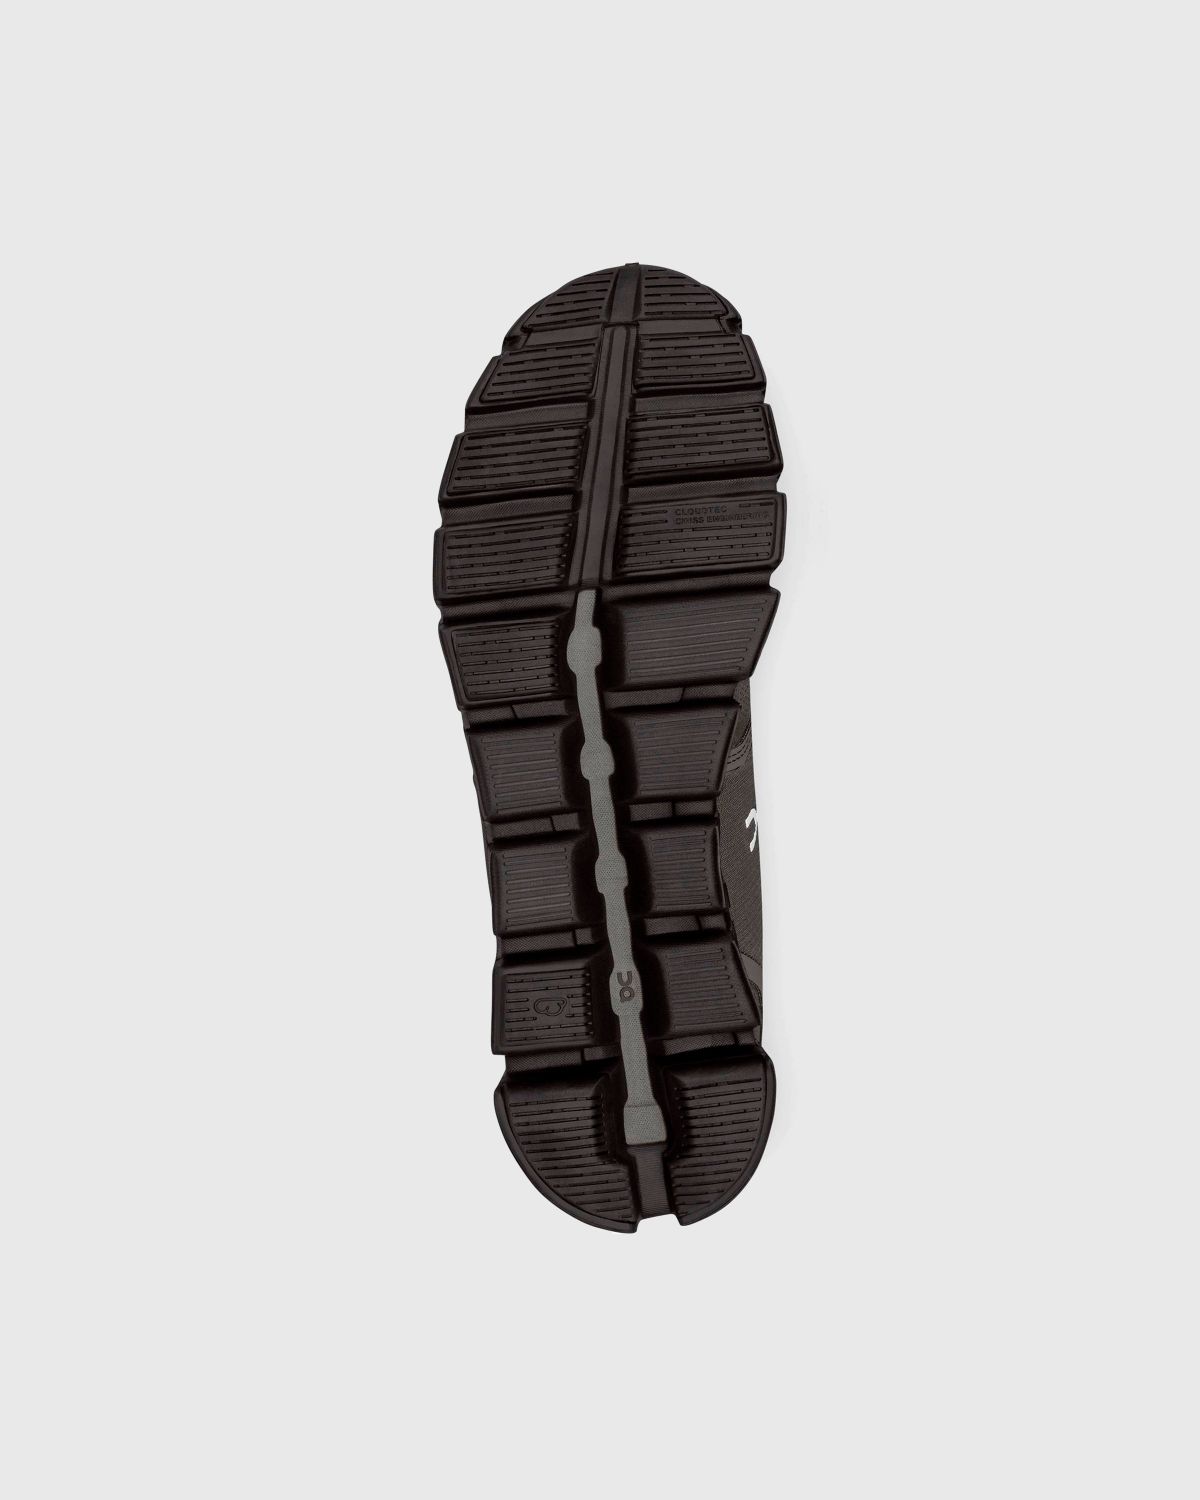 On – Cloud 5 Waterproof Olive/Black - Low Top Sneakers - Green - Image 4